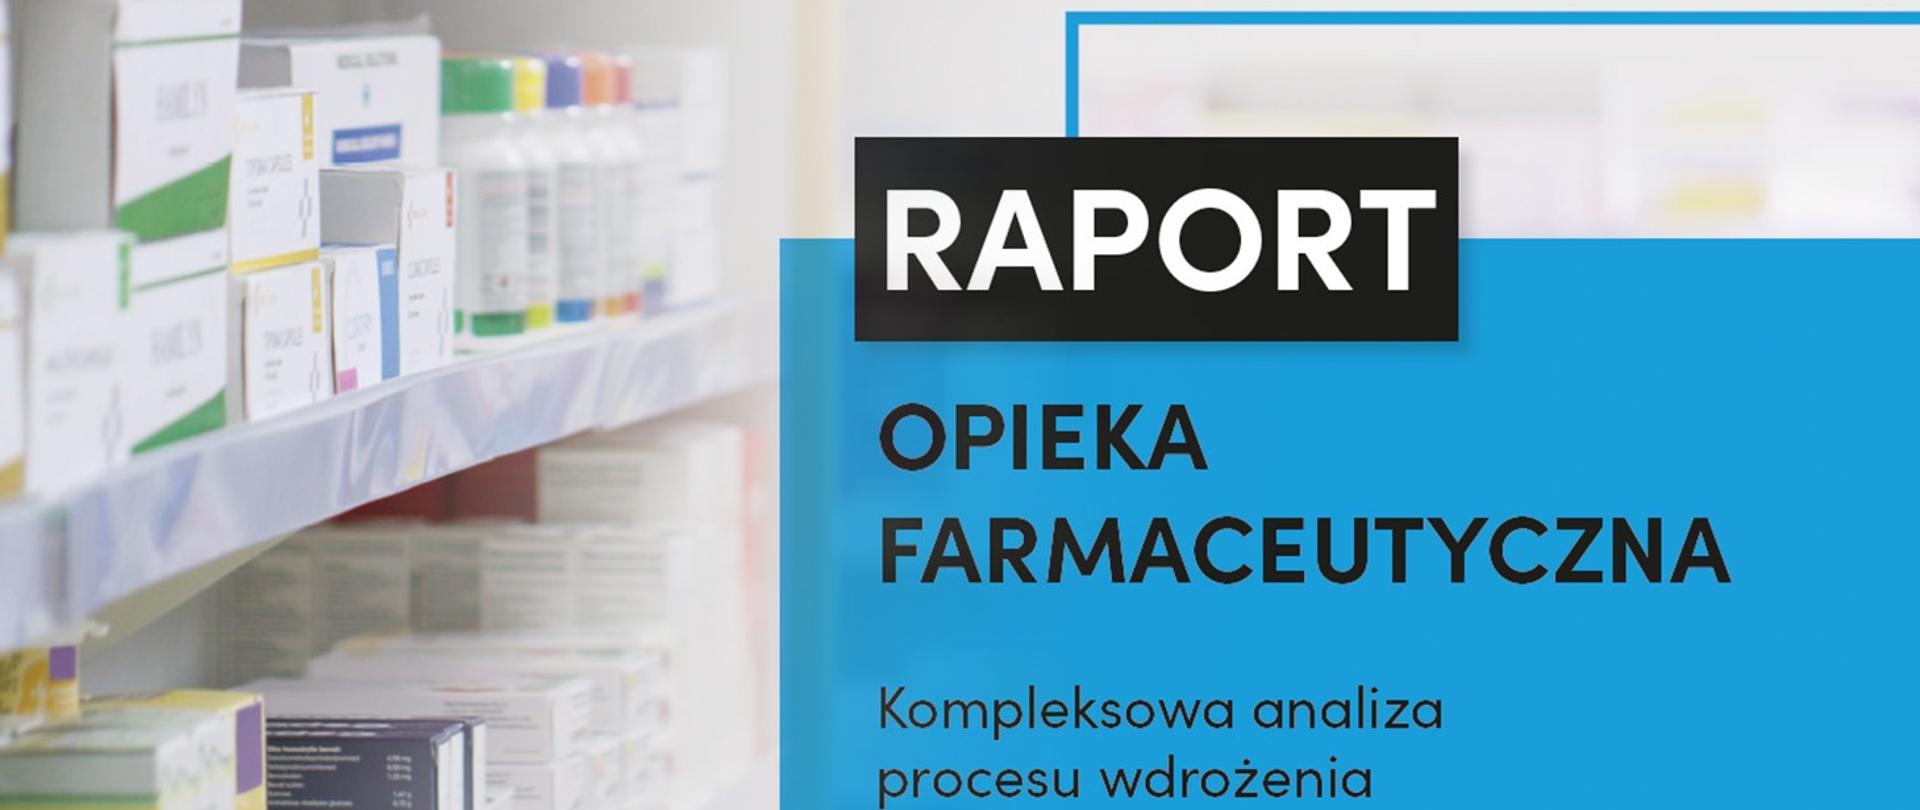 Opieka farmaceutyczna - raport 